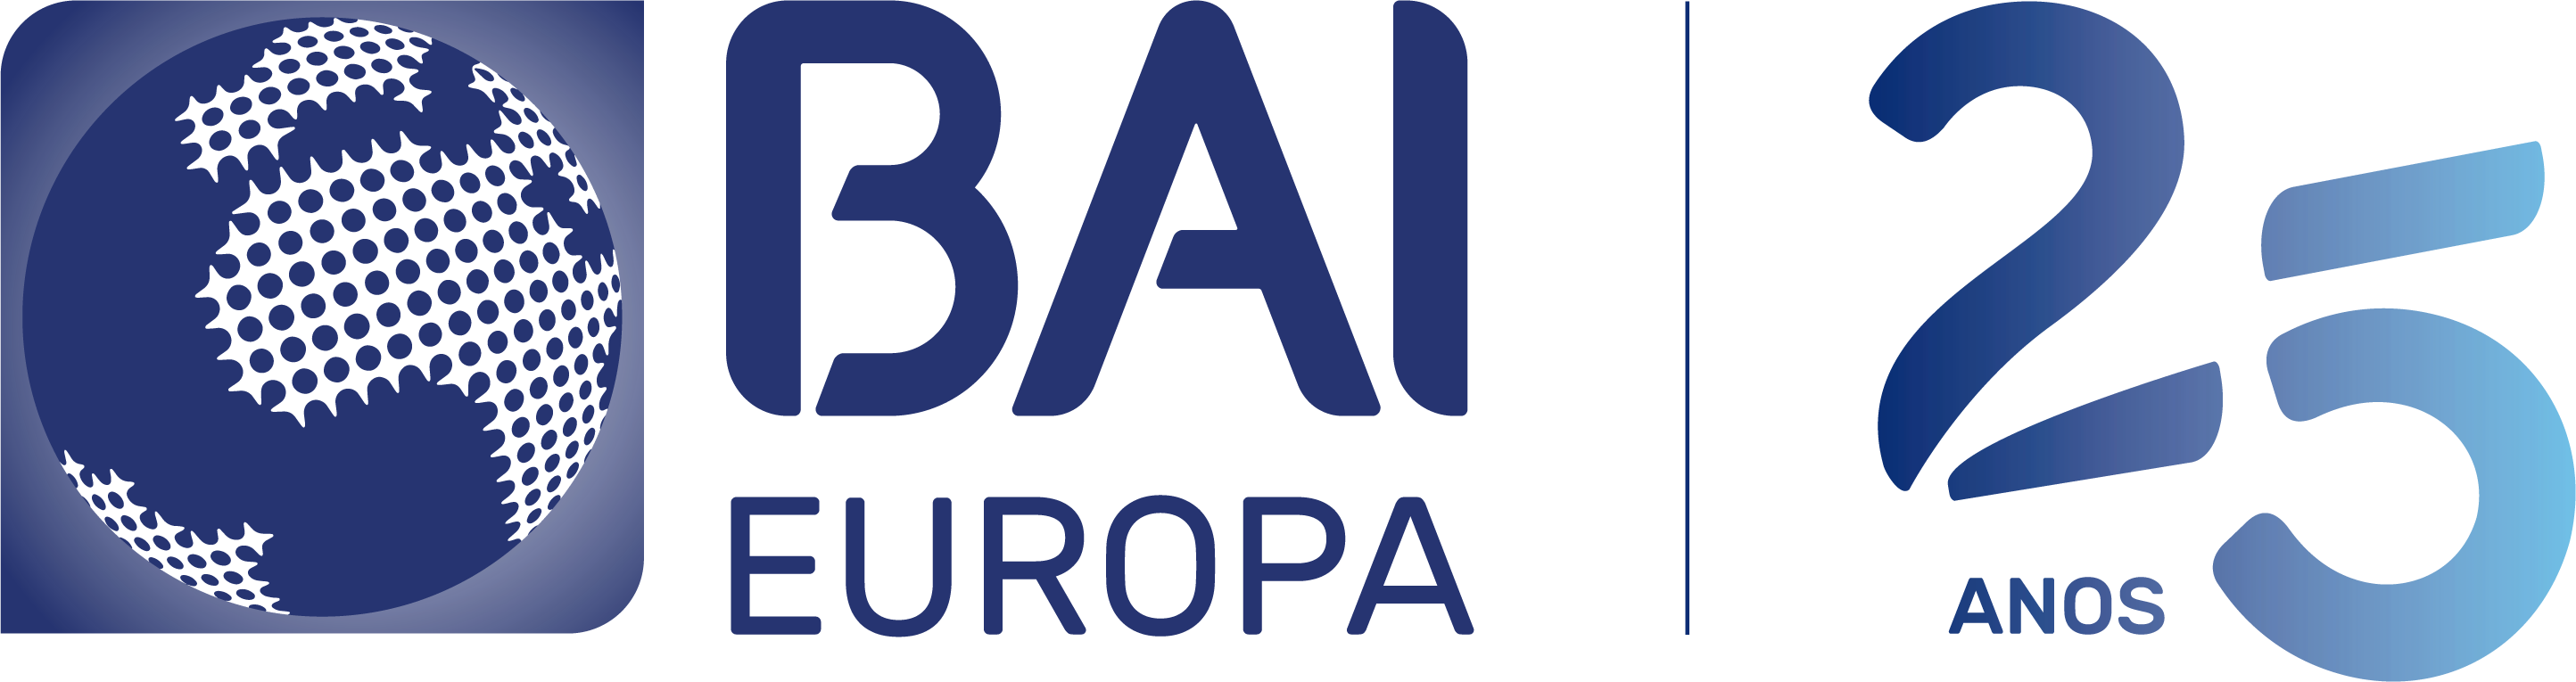 Banco BAI Europa